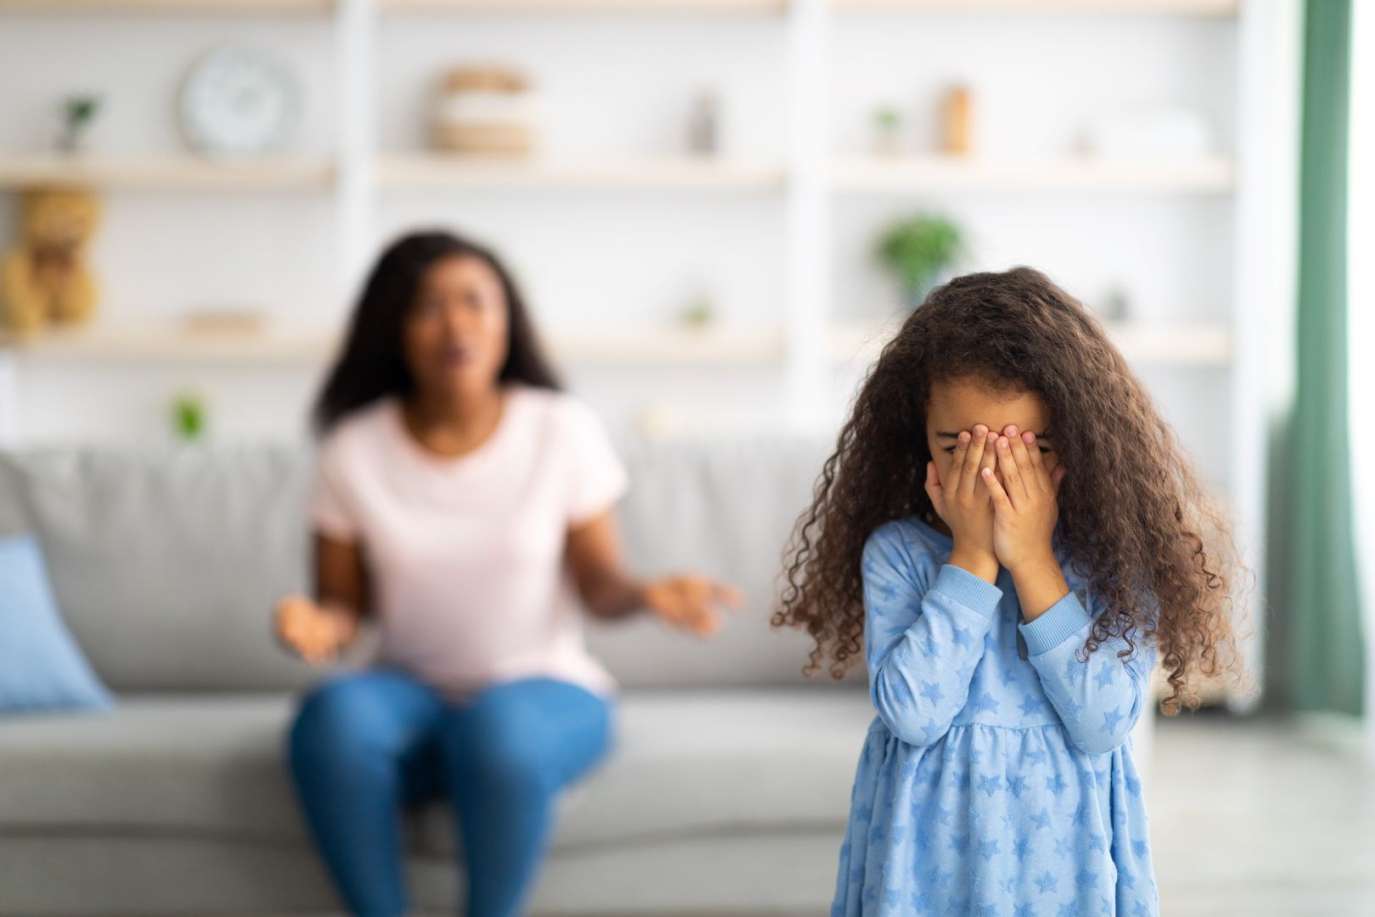   كيف تواجه غضب طفلك وتعلمه السيطرة على مشاعره؟ 